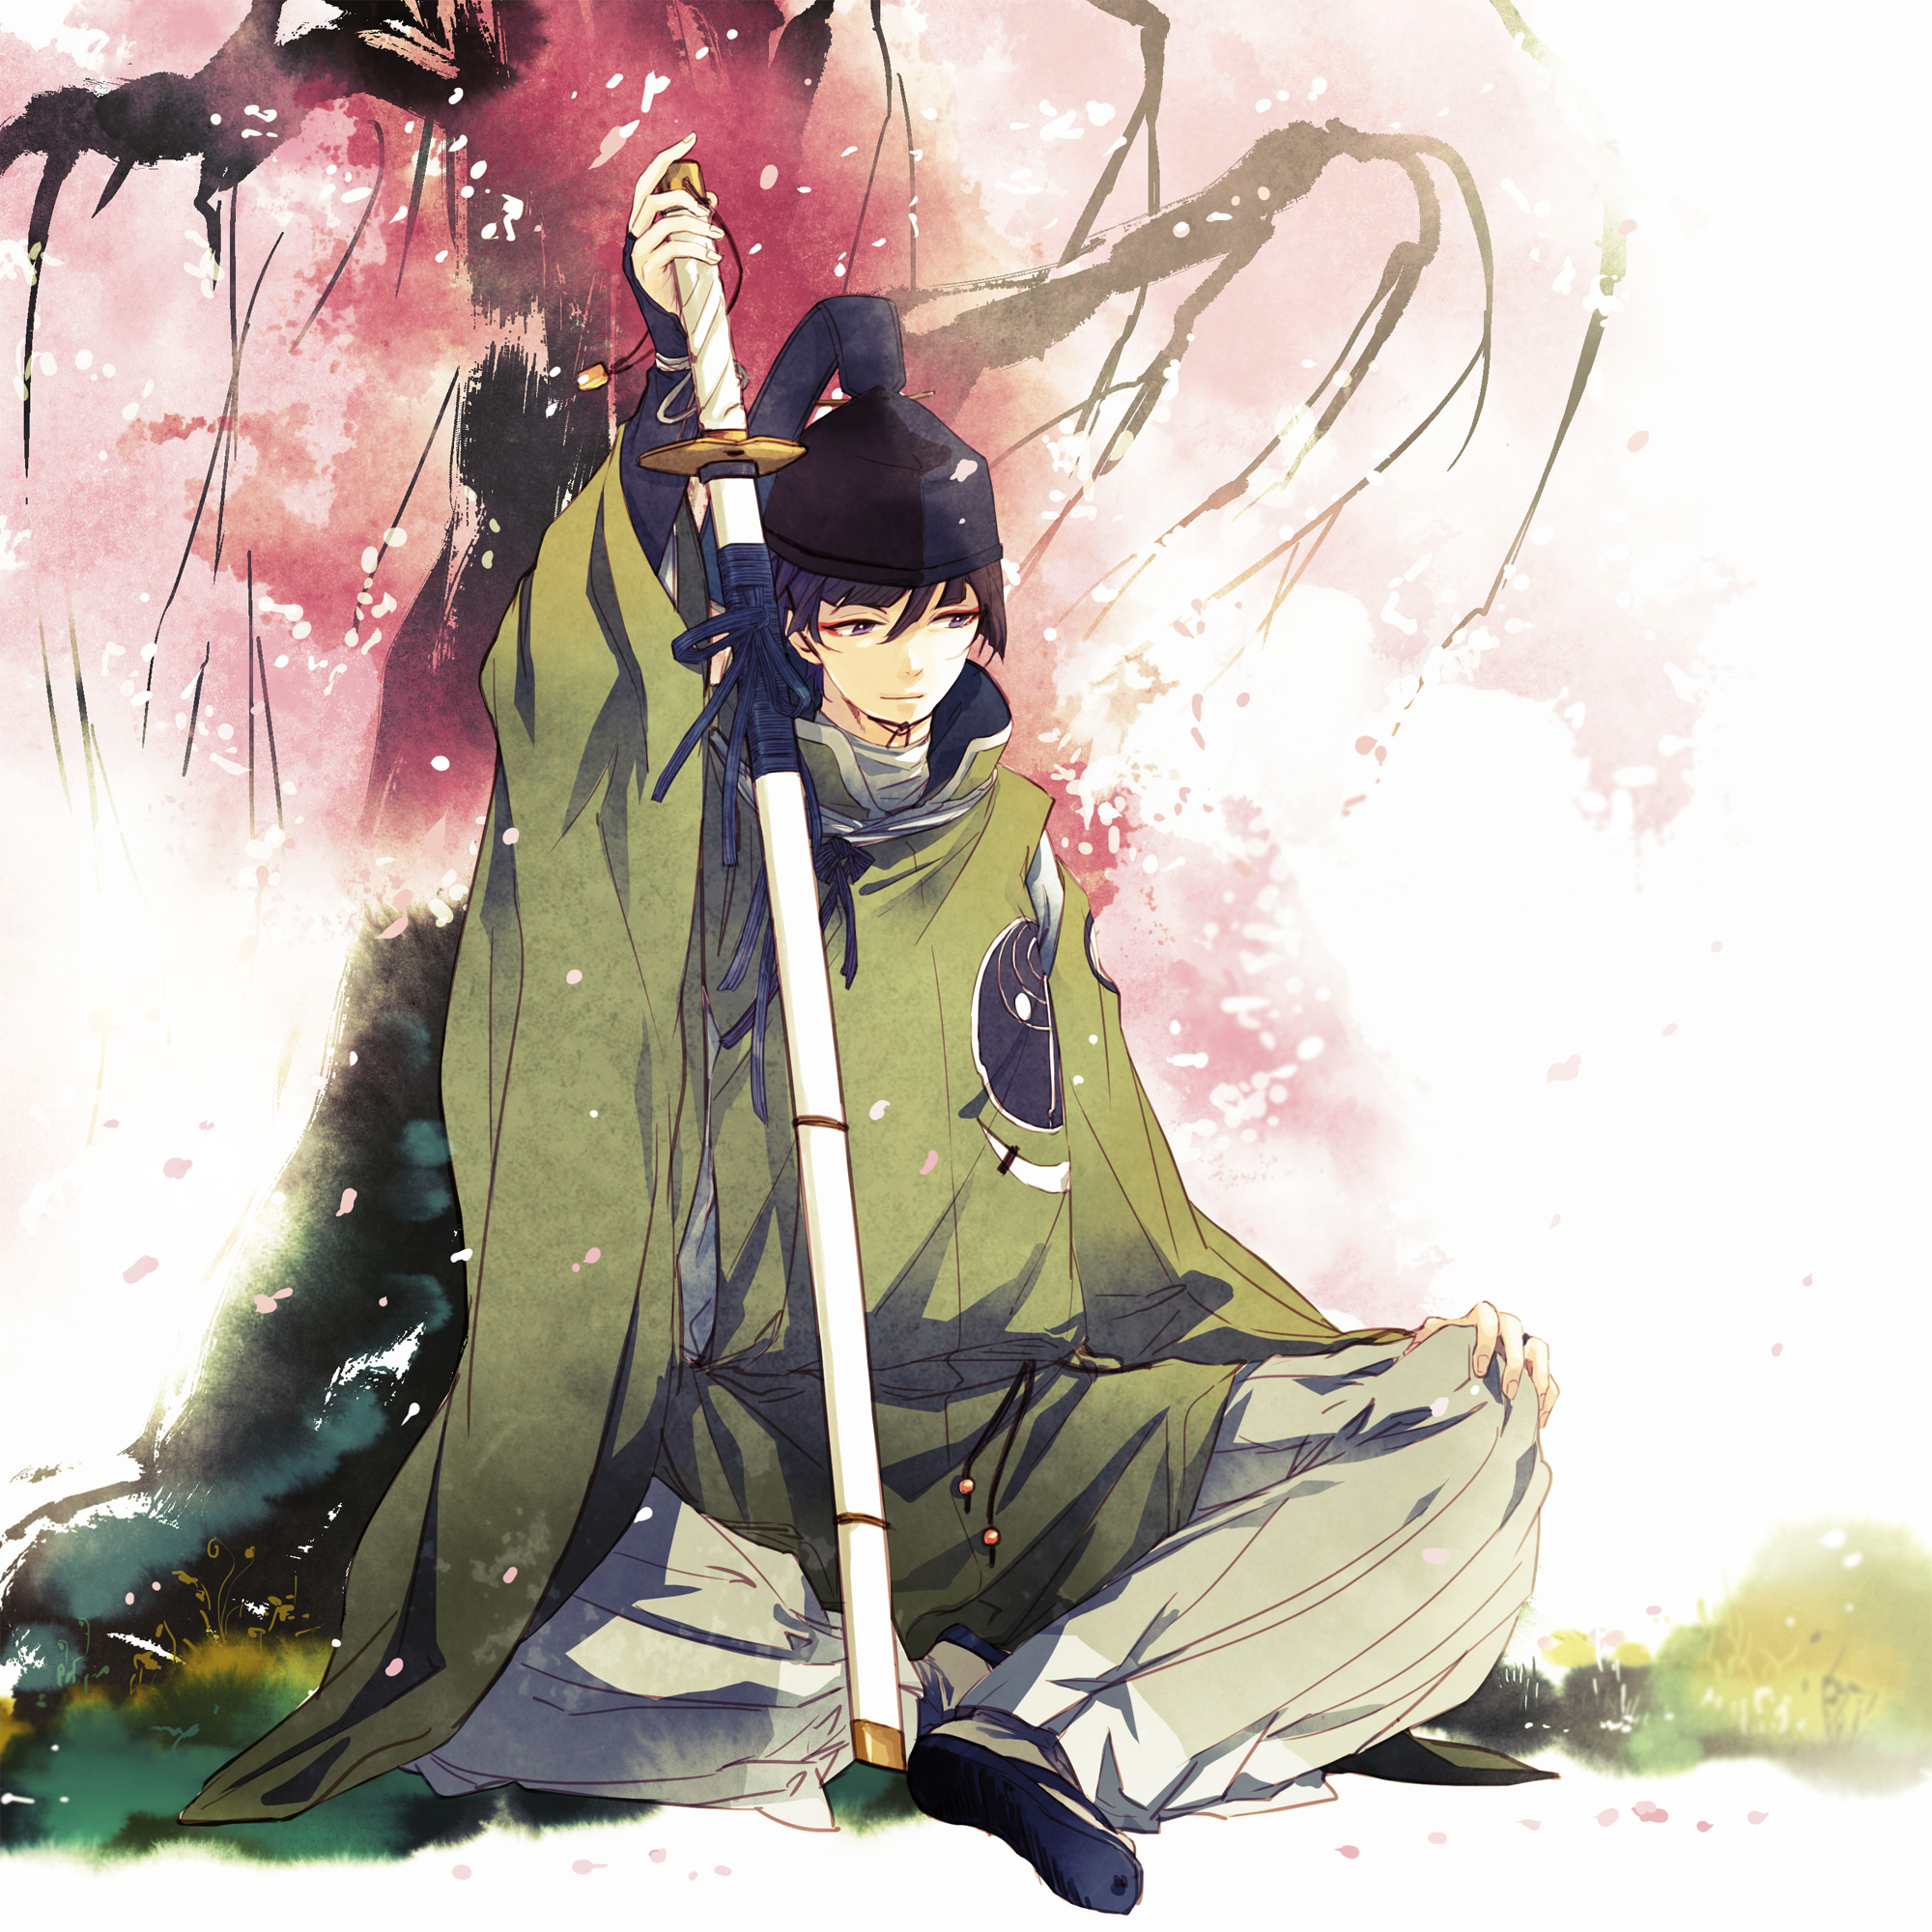 Фото Ishikirimaru с катаной сидит под цветущей сакурой из игры Touken Ranbu / Танец мечей, art by Iwashi